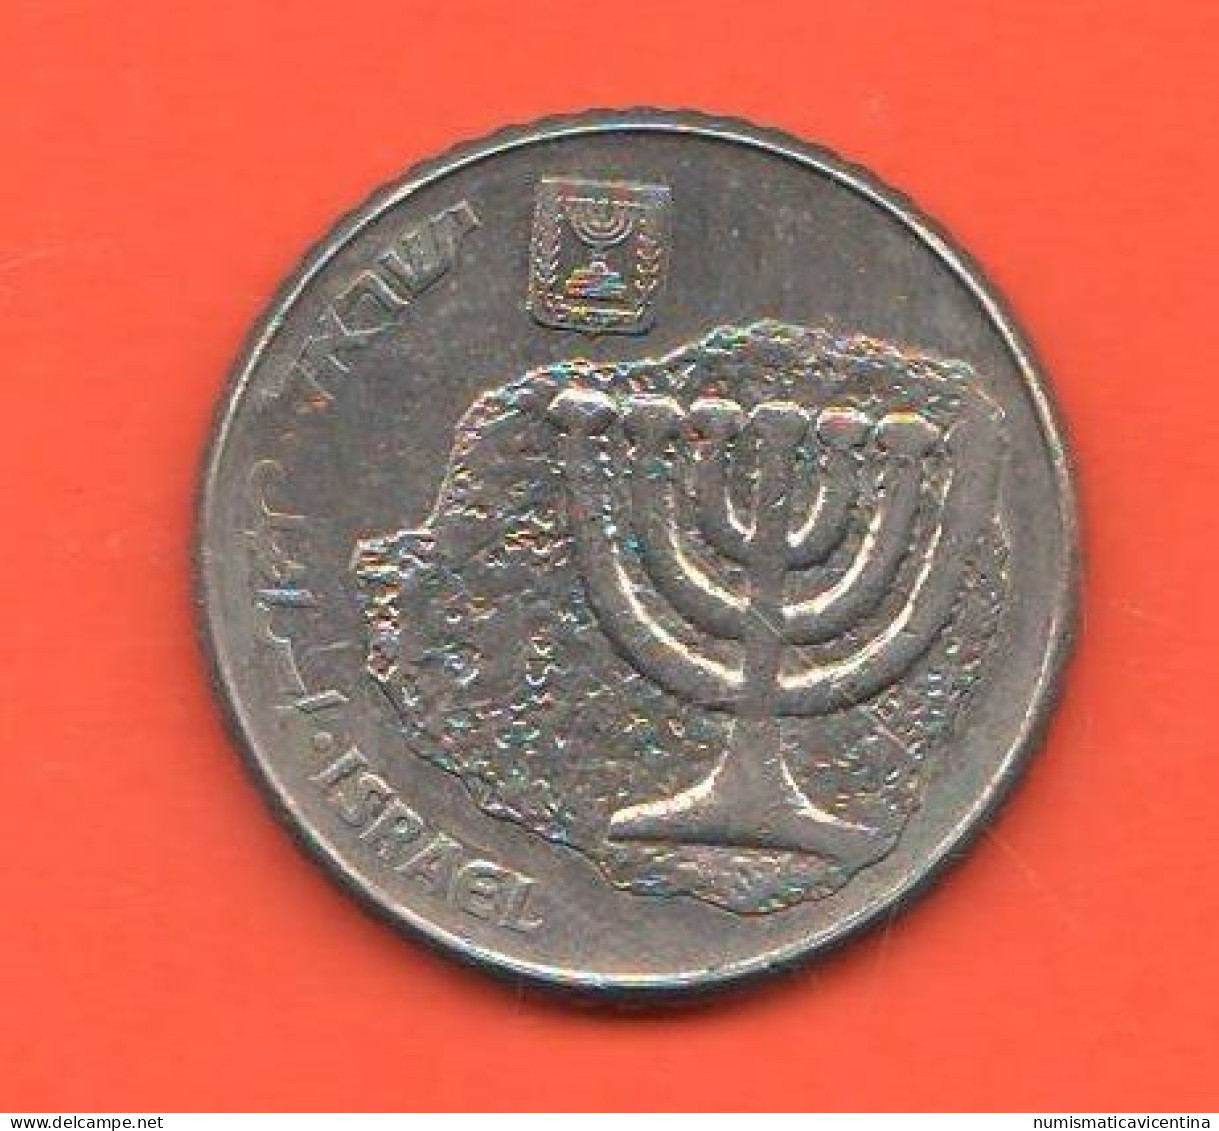 Israel 100 Sheqalim Sicli 1985 Israele Nickel  Coin - Israel